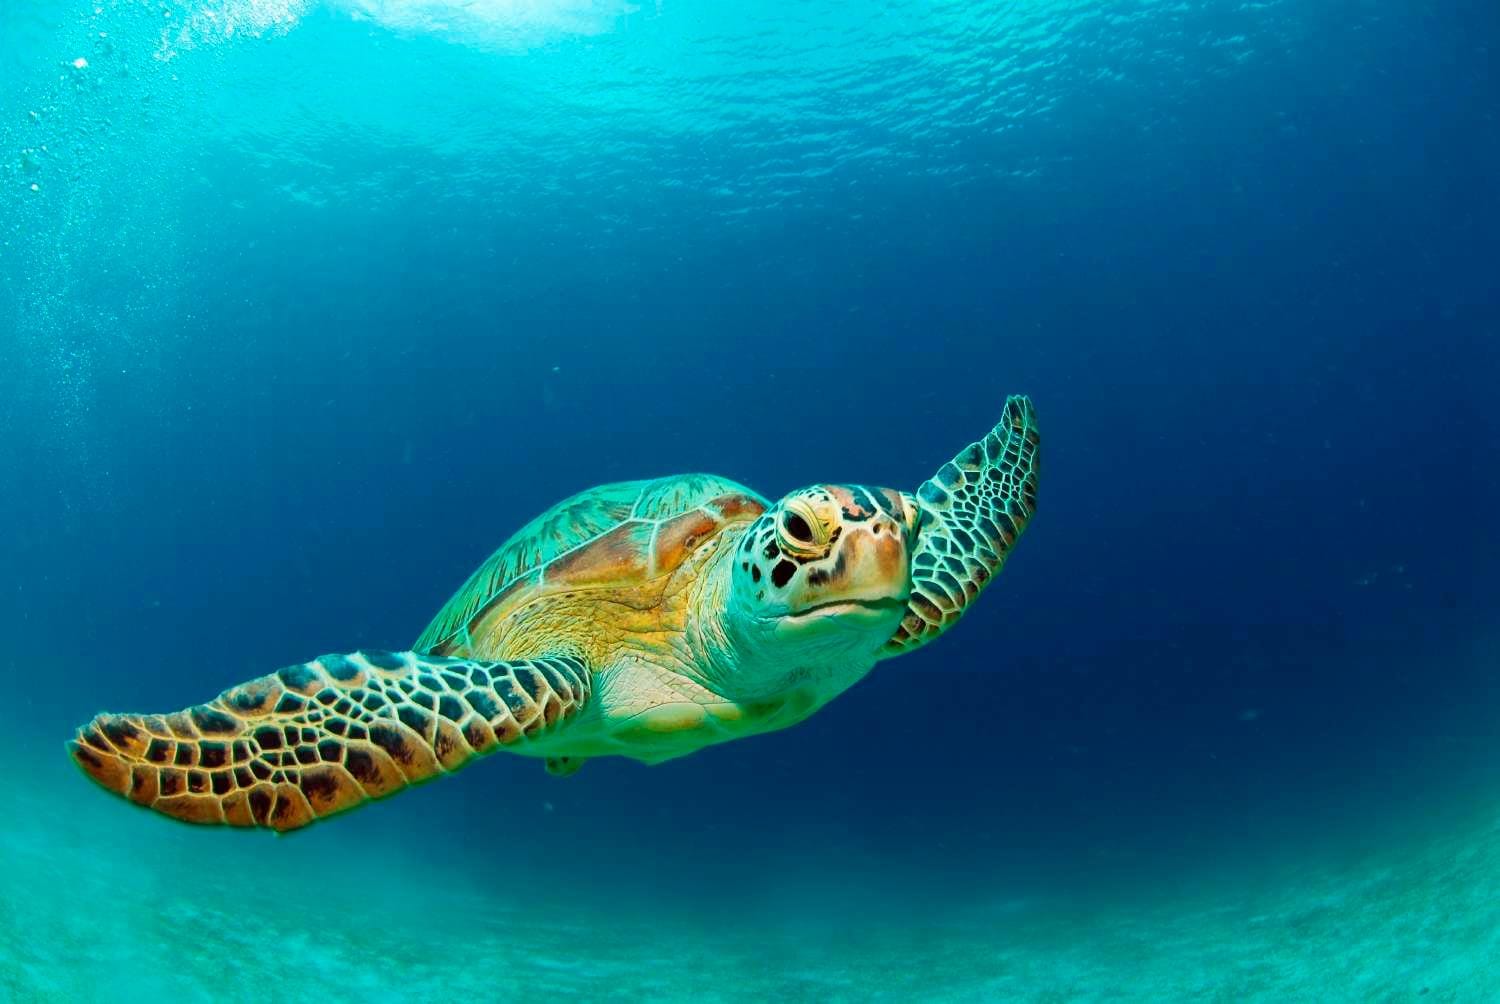 Endangered sea turtle swimming in deep blue ocean waters